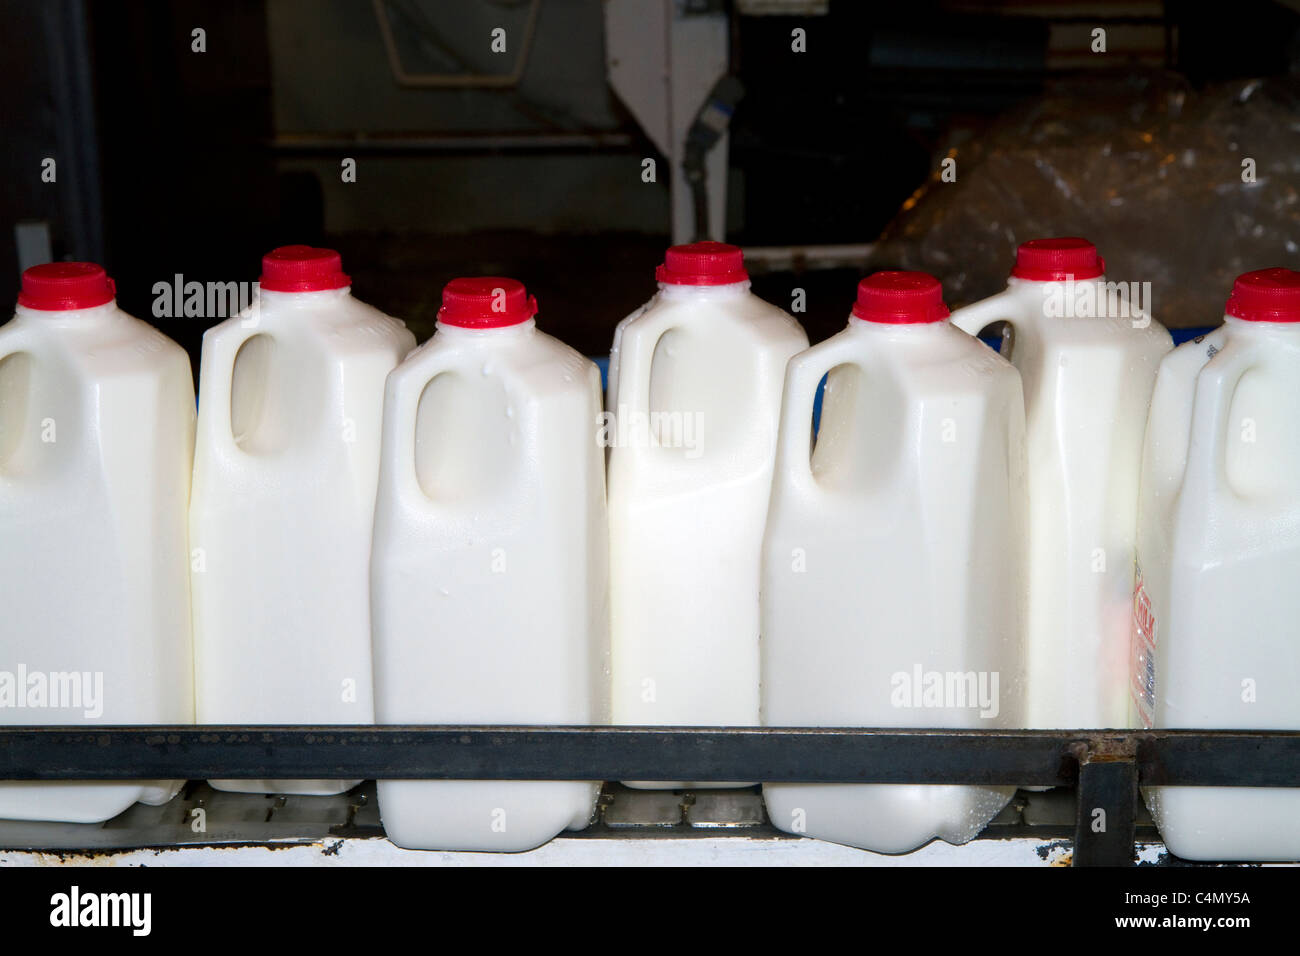 Stoker Milk Company's bottling plant at Burley, Idaho, USA. Stock Photo